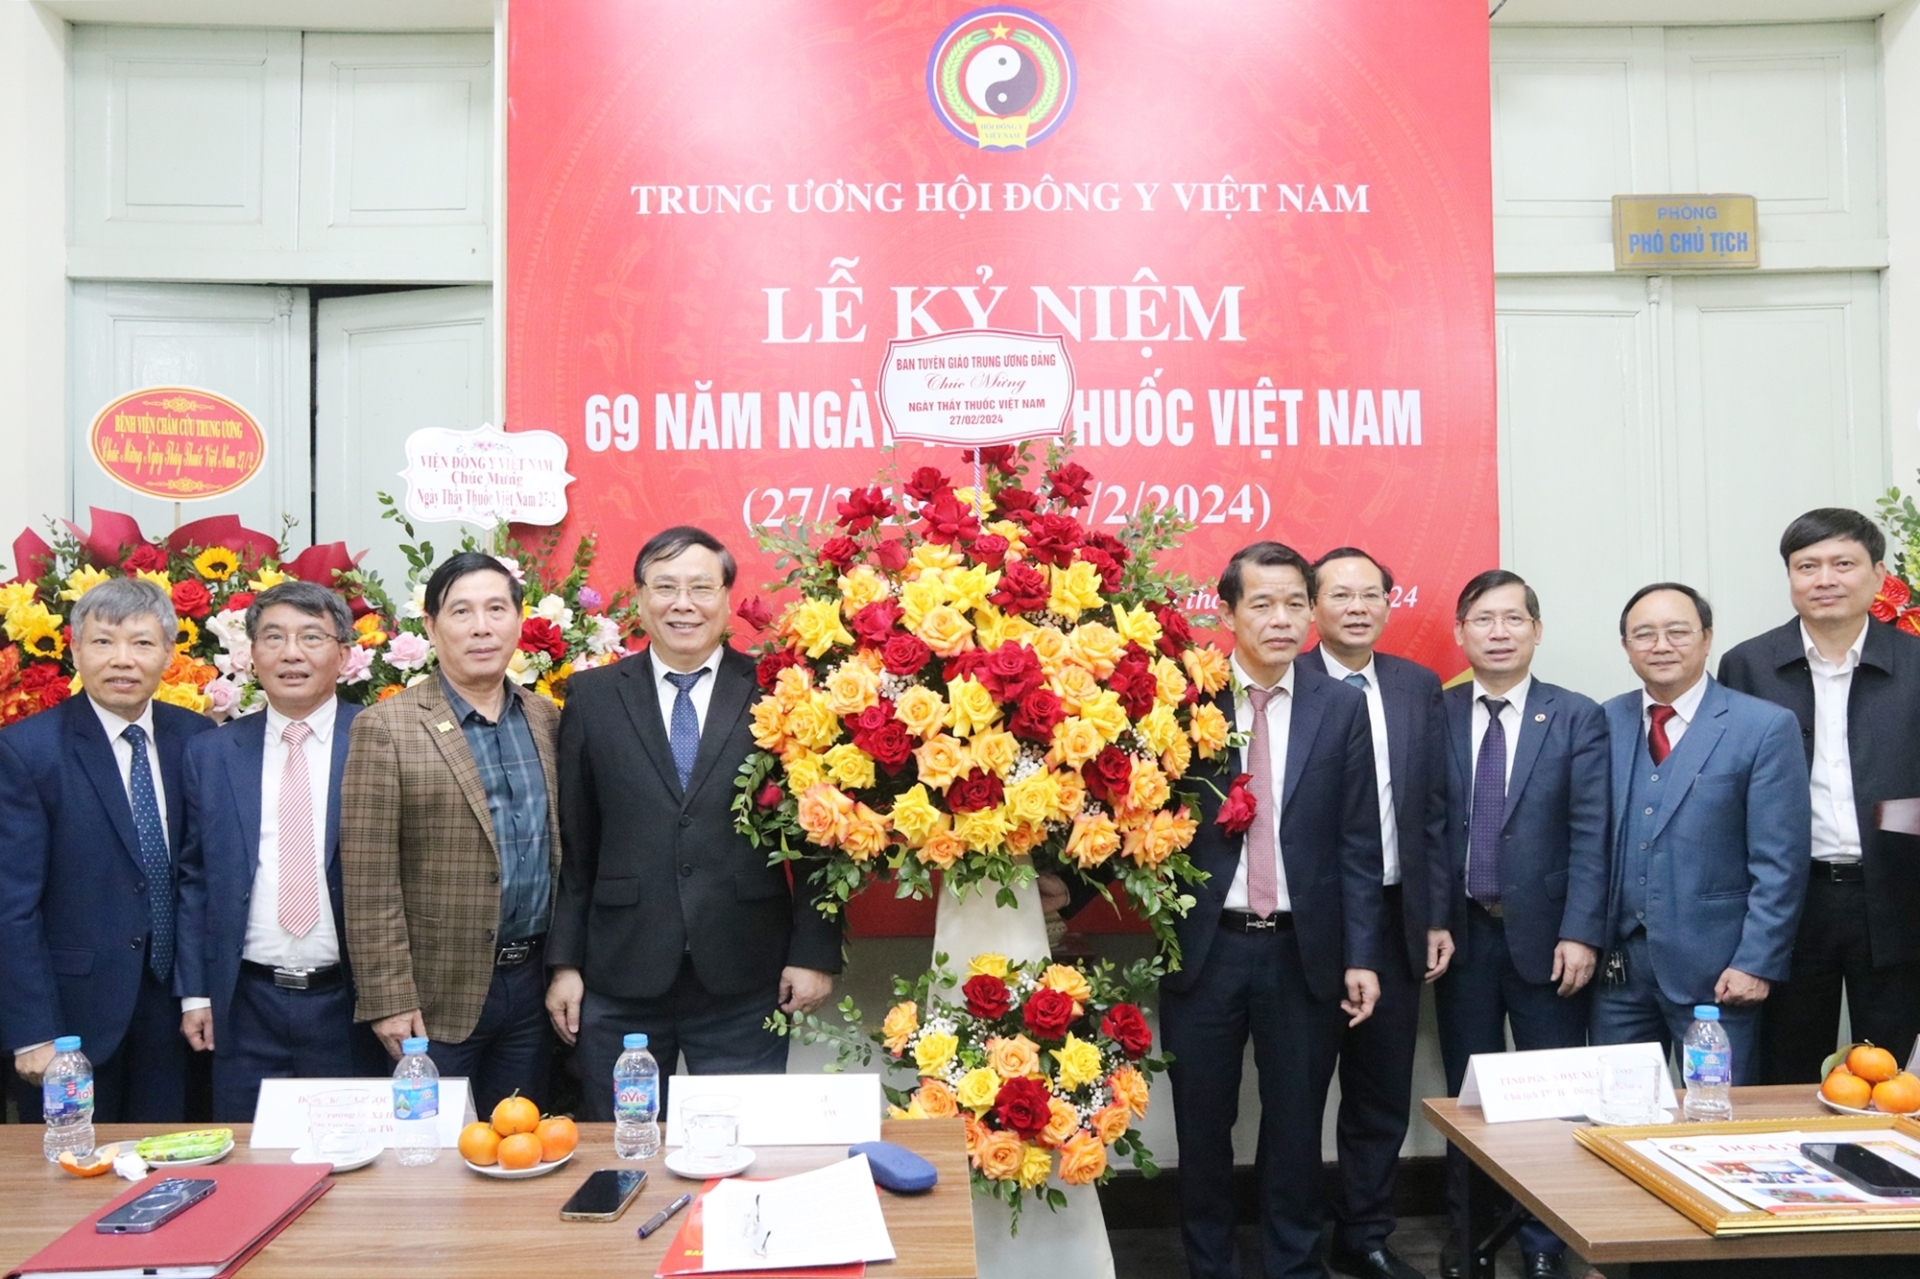 Đồng chí Vũ Thanh Mai chúc mừng Hội Đông y Việt Nam.